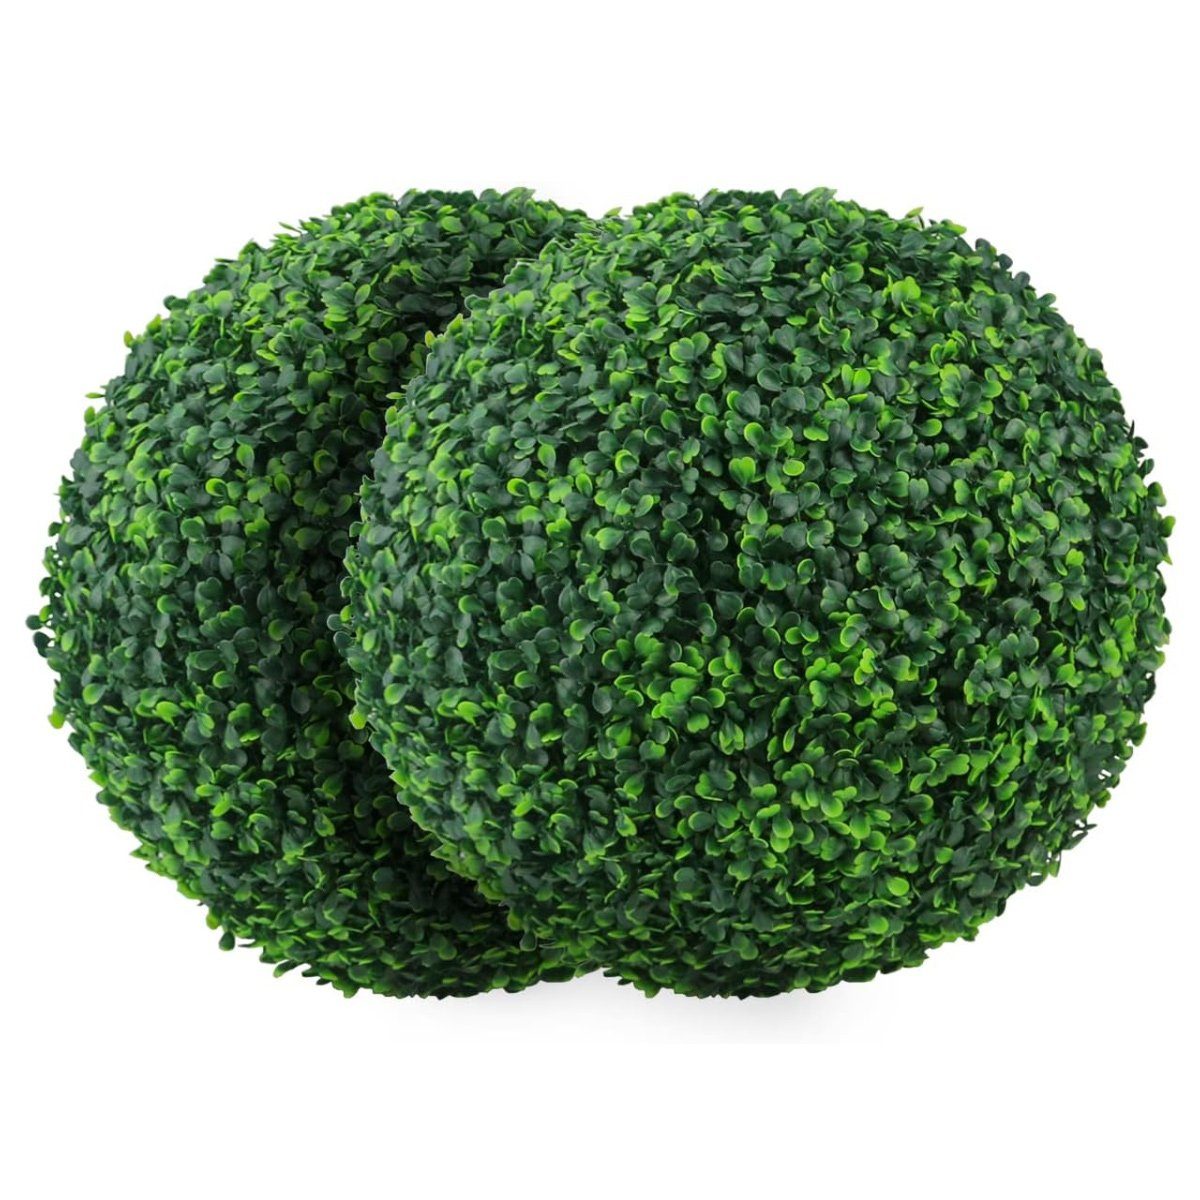 Kunstpflanze Künstliche Pflanze Formschnittkugel Kunstbuchsbaum dekorative Kugeln, Jormftte grün2